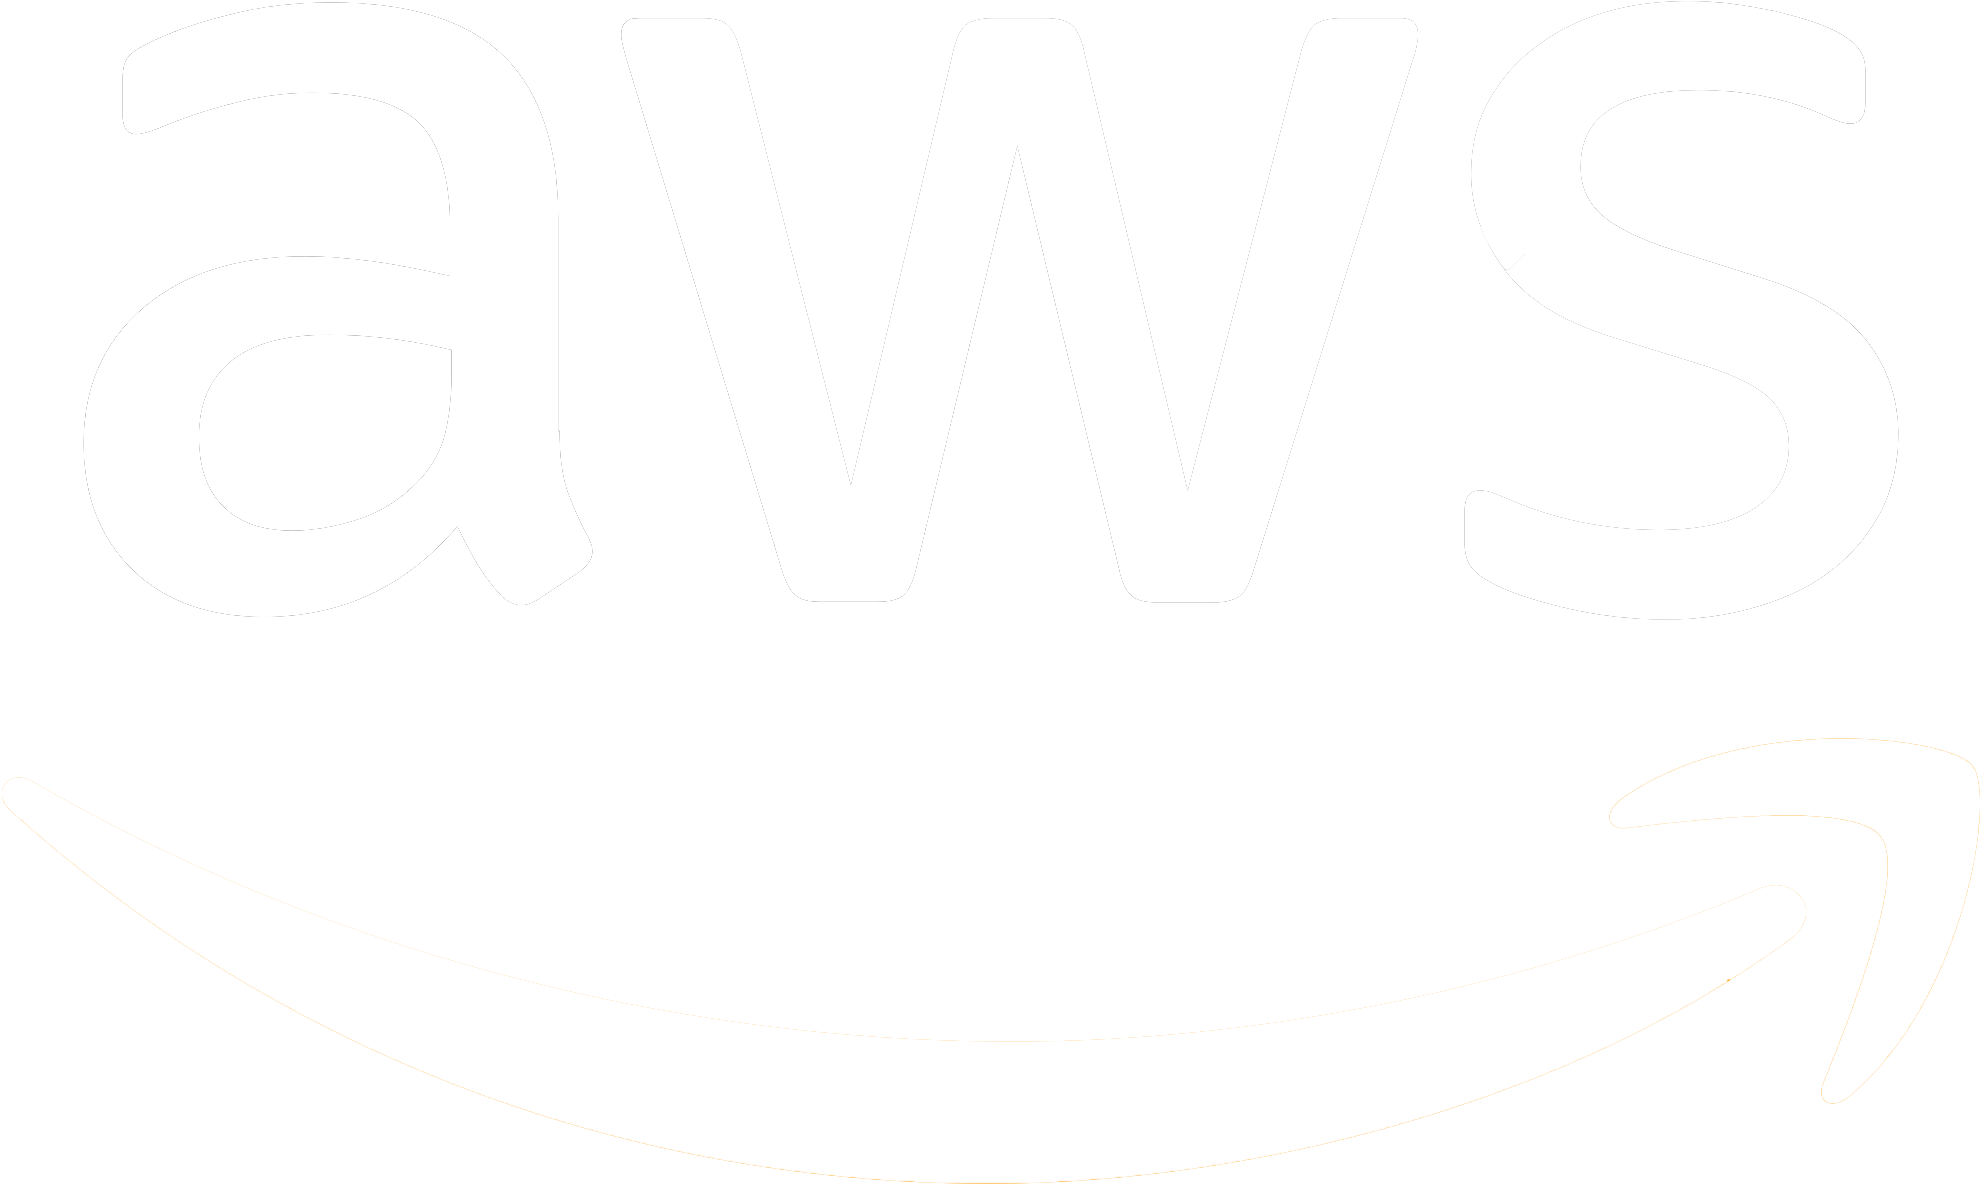 aws logo transparent background
